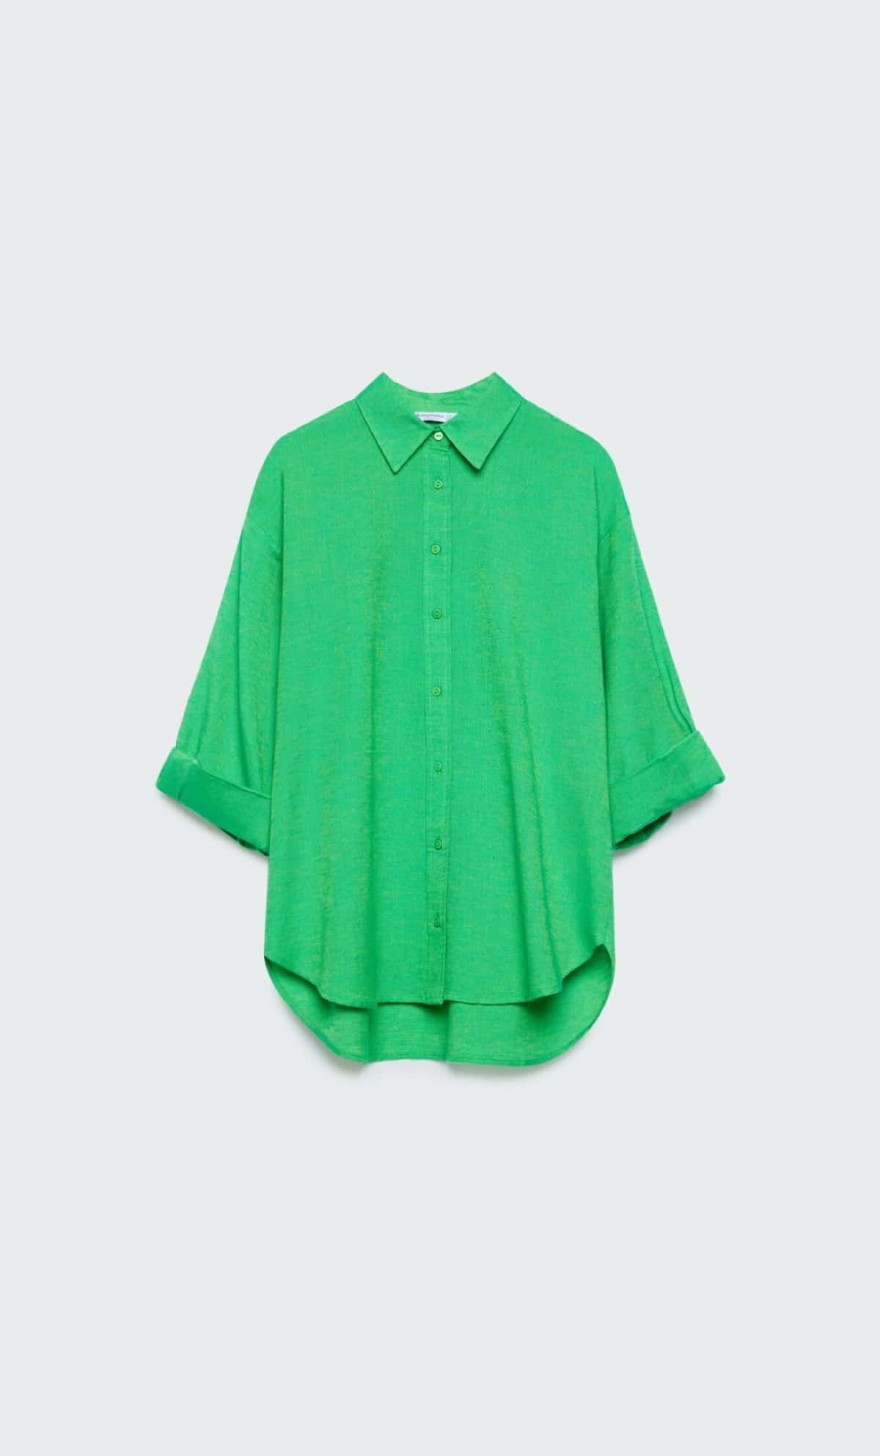 Πράσινο πουκάμισο από τα Stradivarius 